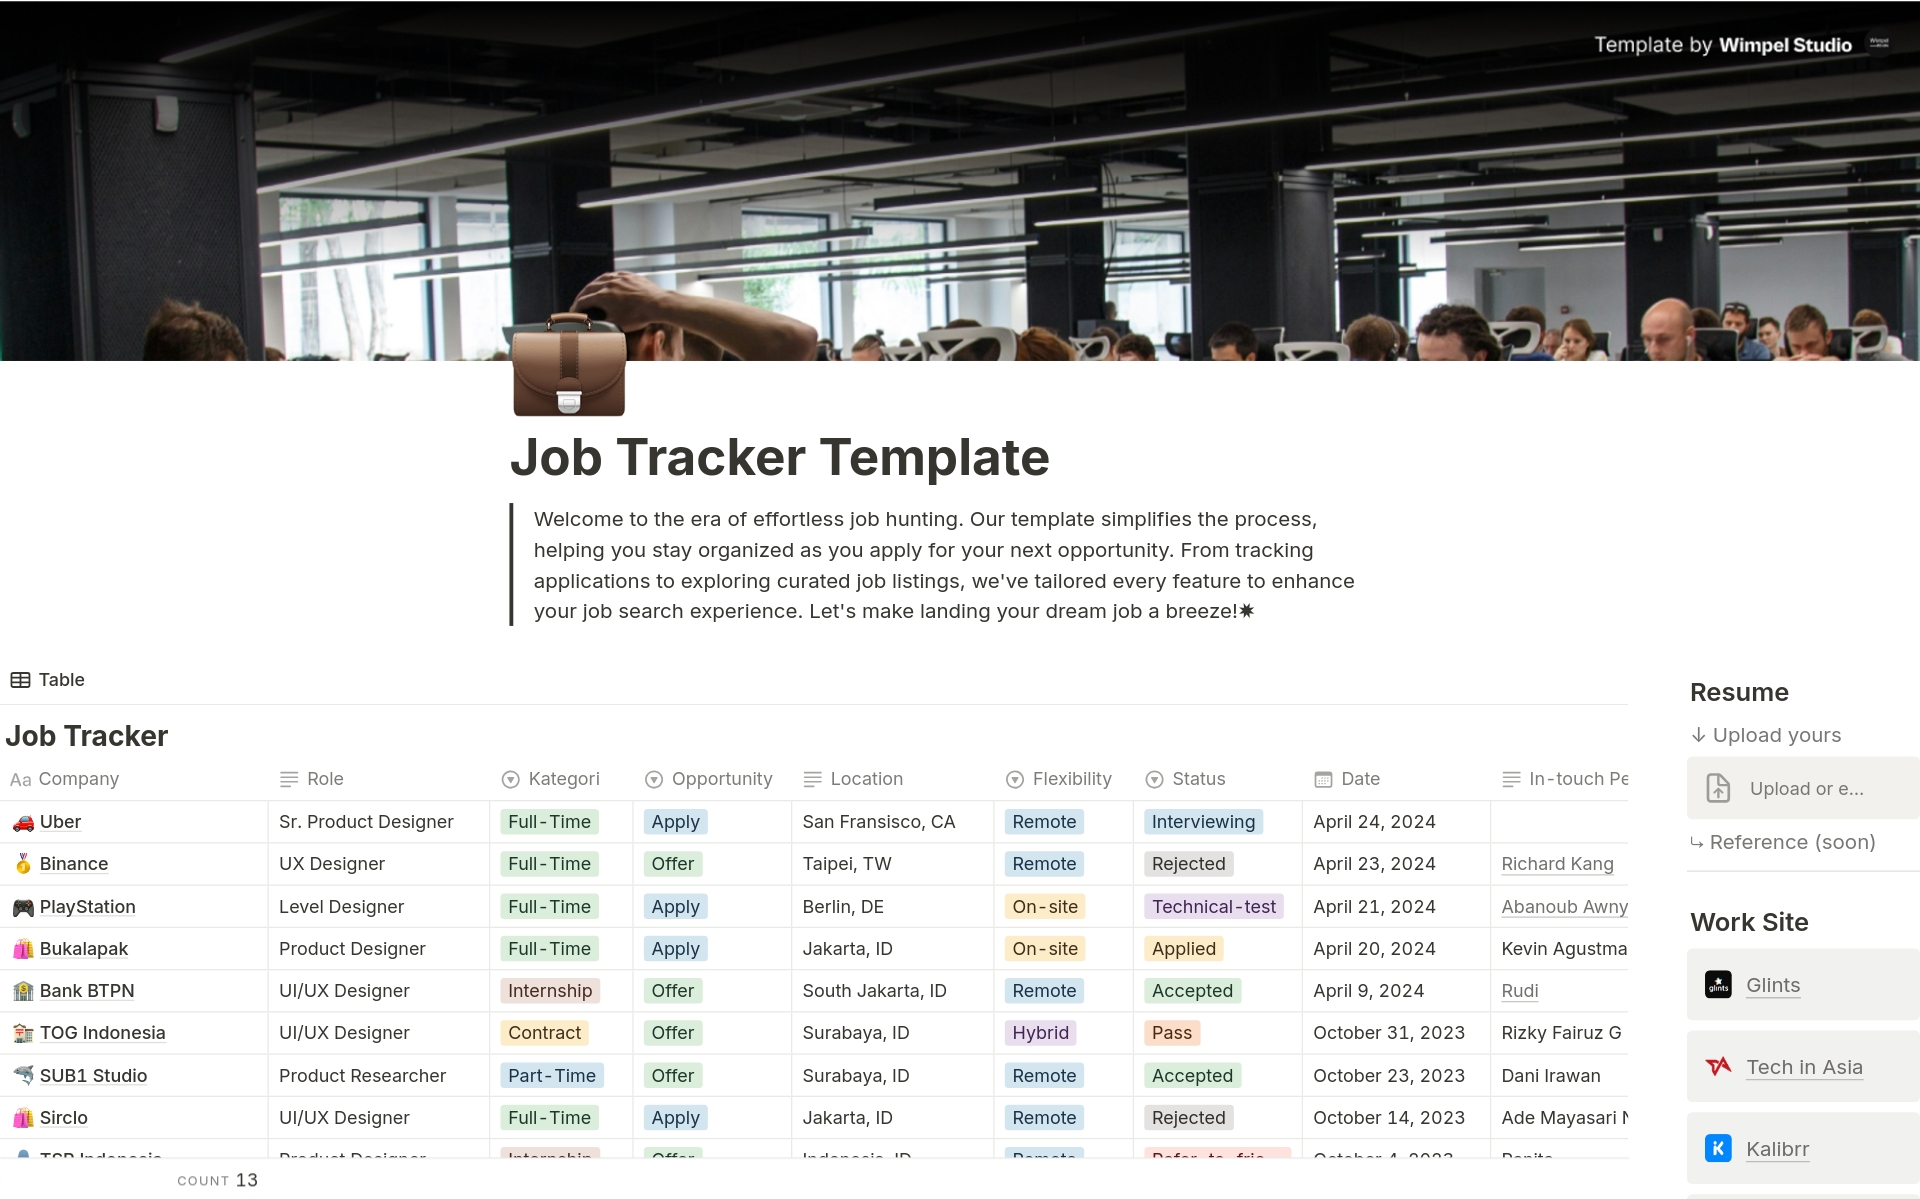 Job Application Trackerのテンプレートのプレビュー